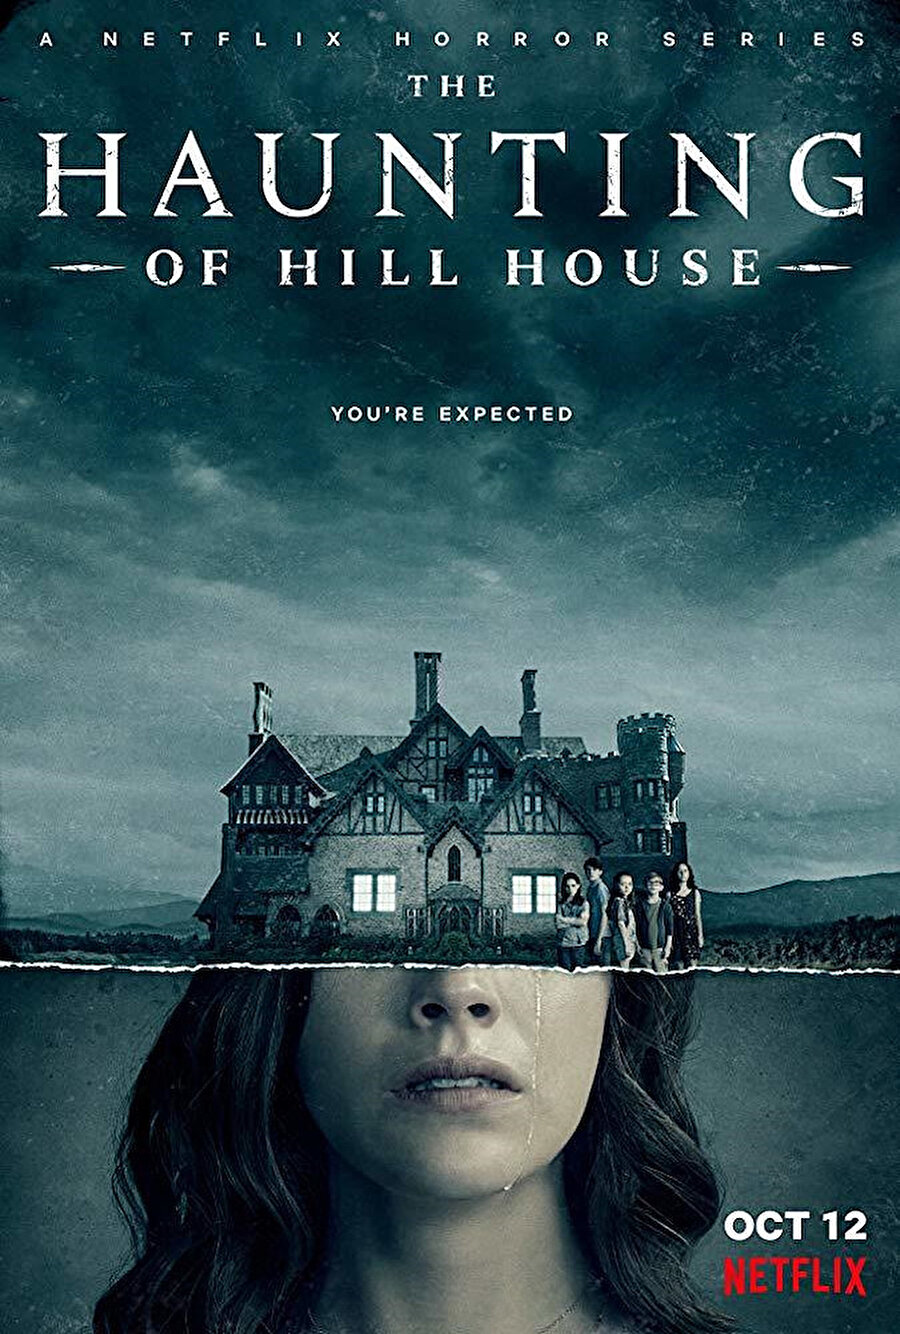 Son yılların en iyi korku dizileri arasında yer alan The Haunting of Hill House (Tepedeki Ev), ülke çapında Hill House (Perili Köşk) olarak nam salacak bir evde büyüyen kardeşlerin hikâyesini konu ediniyor. Shirley Jackson’ın aynı adlı dünyaca ünlü romanından ekrana uyarlanan The Haunting of Hill House’da, yıllar sonra yeniden bir araya gelen ve çocukluğu Hill House’da geçmiş kardeşlerin, bu köşk ve geçmişten gelen hayaletlerle yüzleşmeleri gerilim dozu oldukça yüksek bir kurguyla ele alınıyor. Dram, korku ve gizem türlerindeki dizi, toplam 10 bölümden oluşuyor.